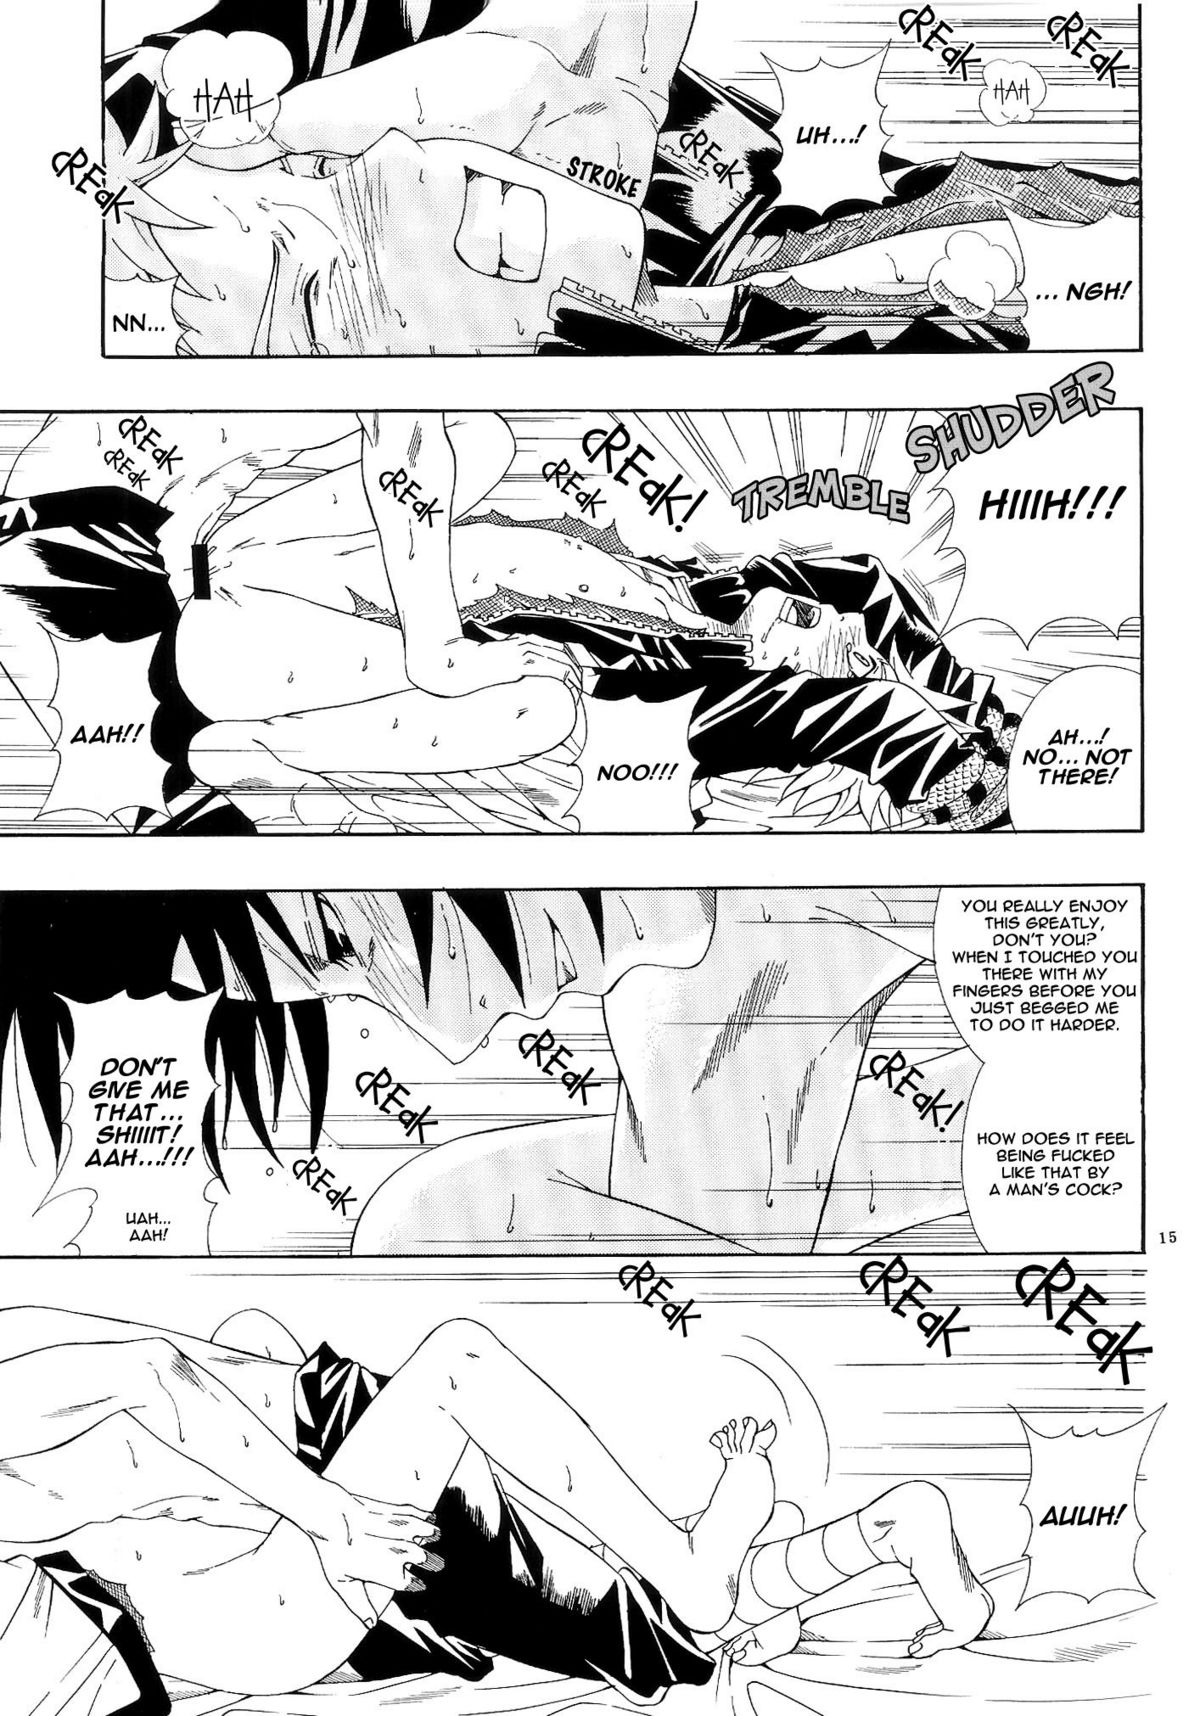 ERO ERO²: Volume 1.5  (NARUTO) [Sasuke X Naruto] YAOI -ENG- page 14 full